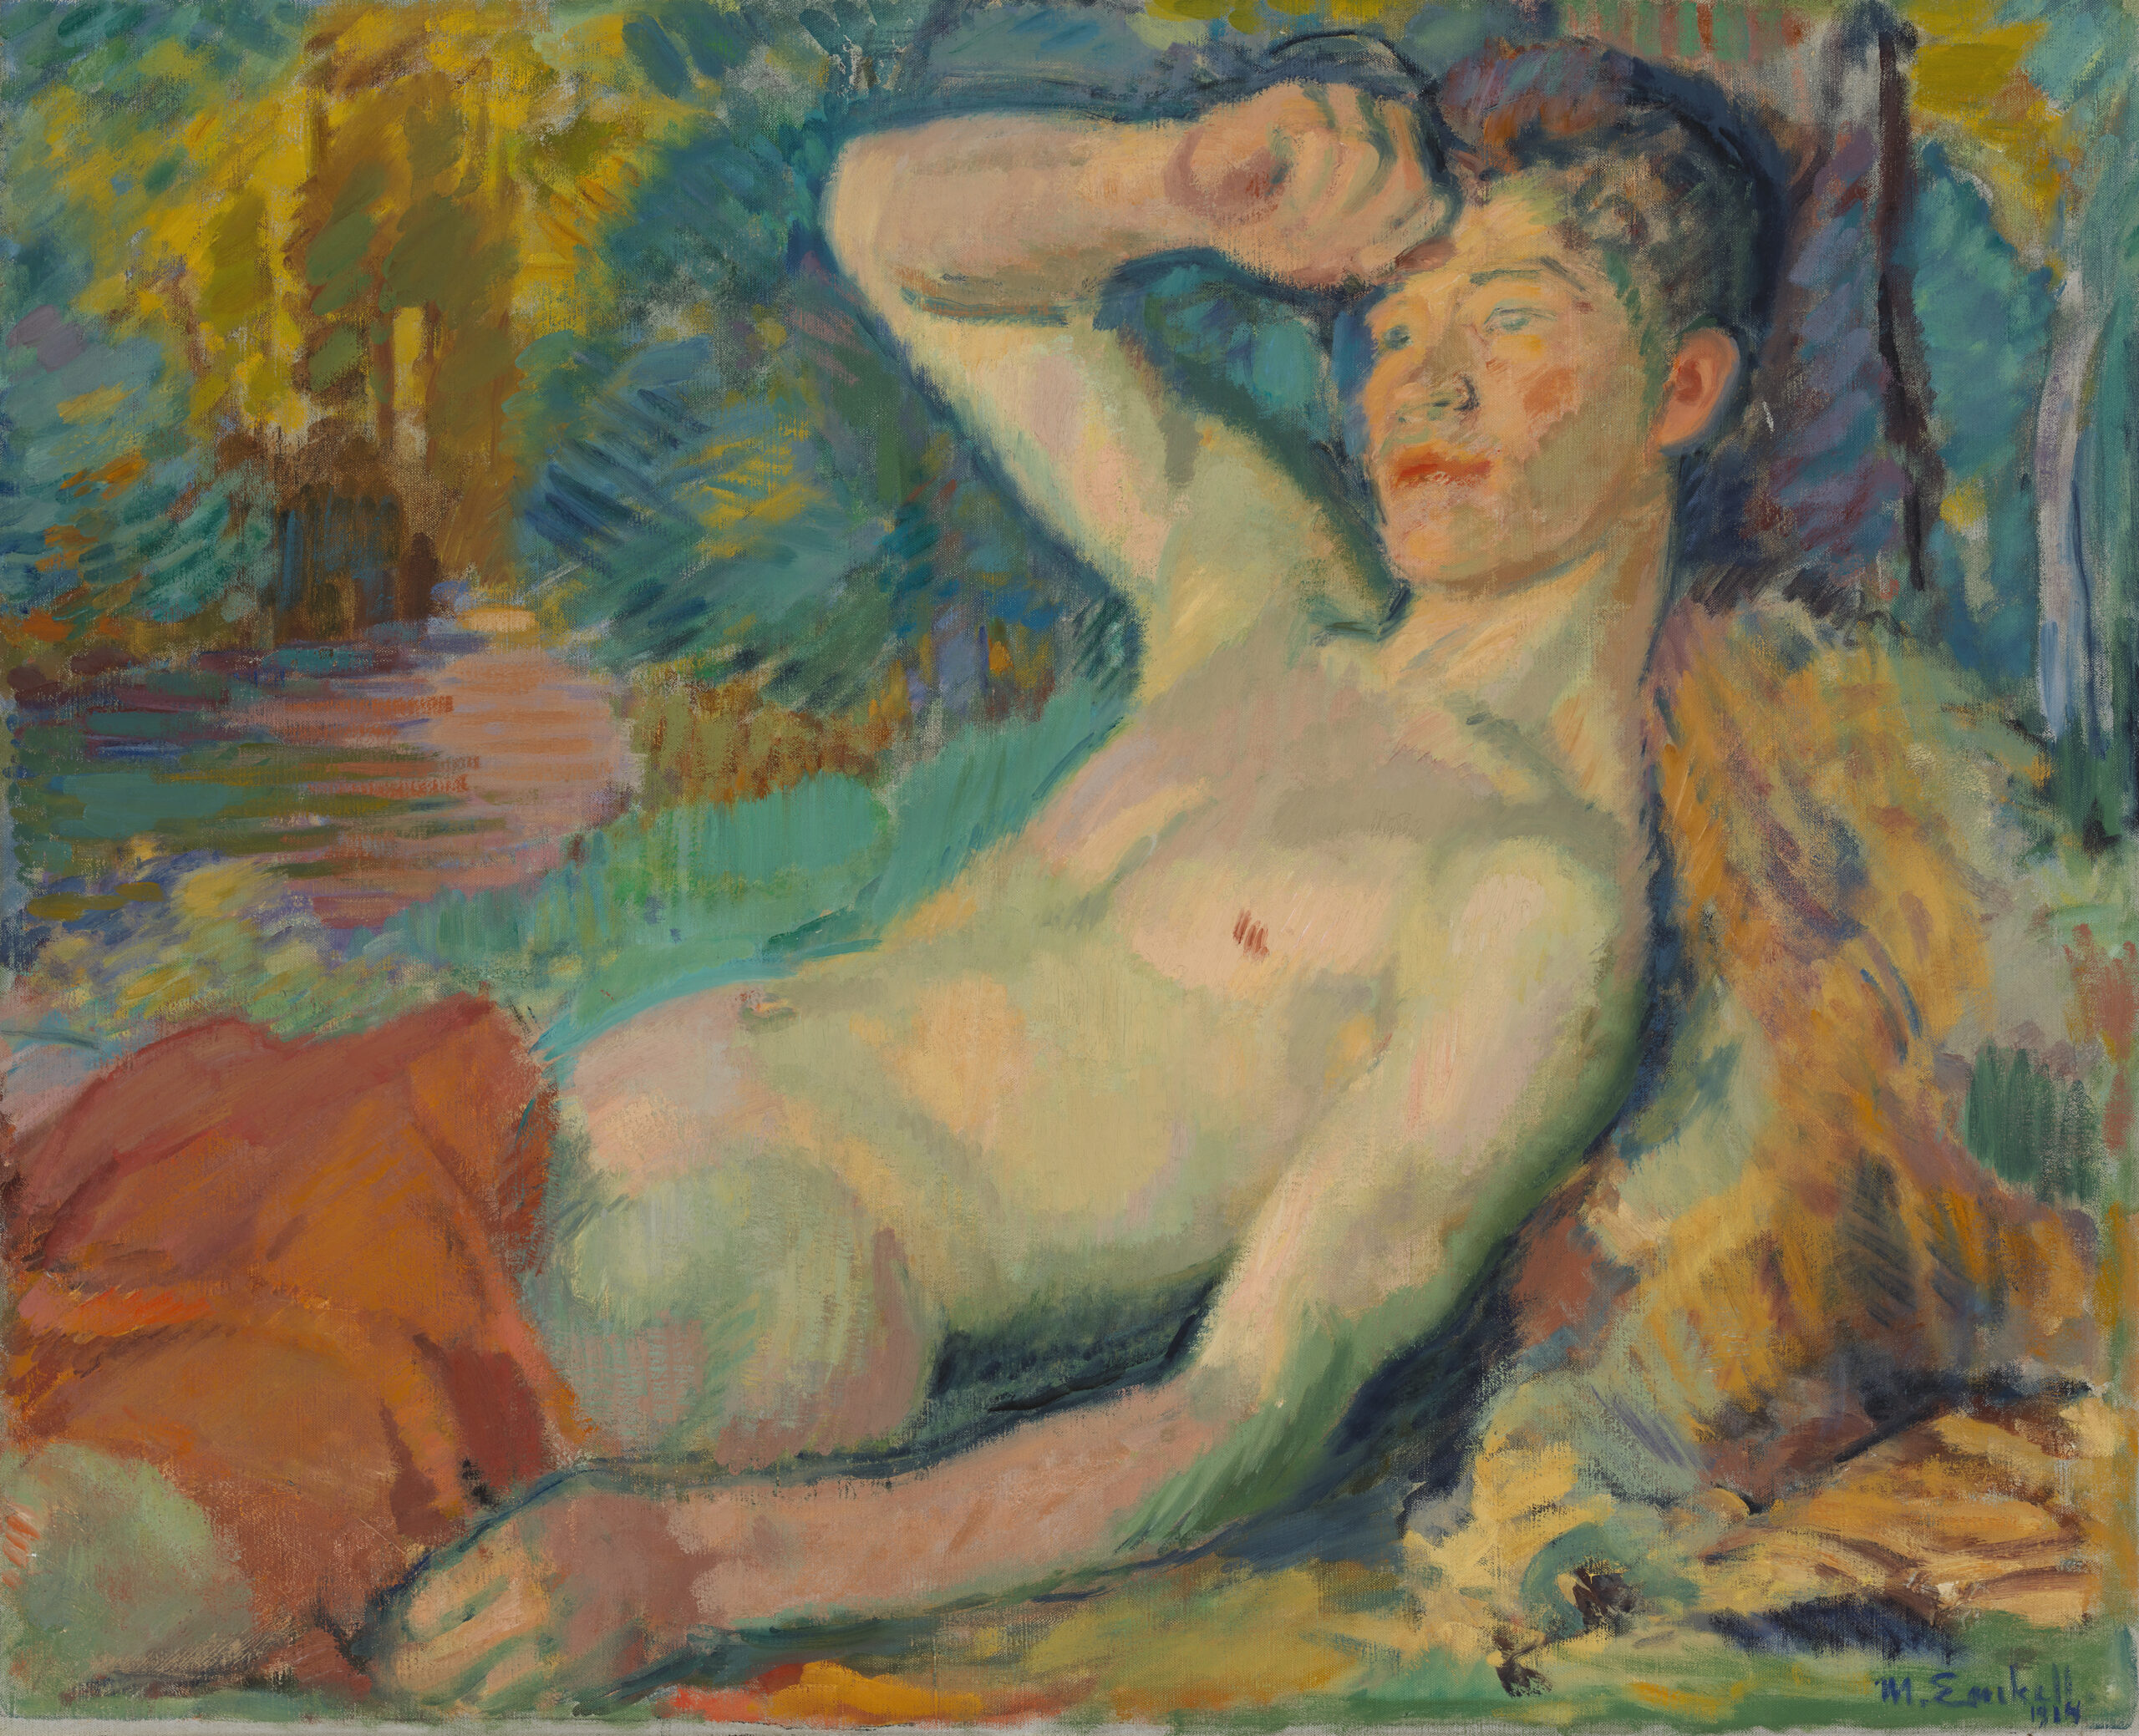 Värikäs maalaus nuoresta henkilöstä, joka makaa yläruumis paljaana ja nostaa kätensä otsalleen.